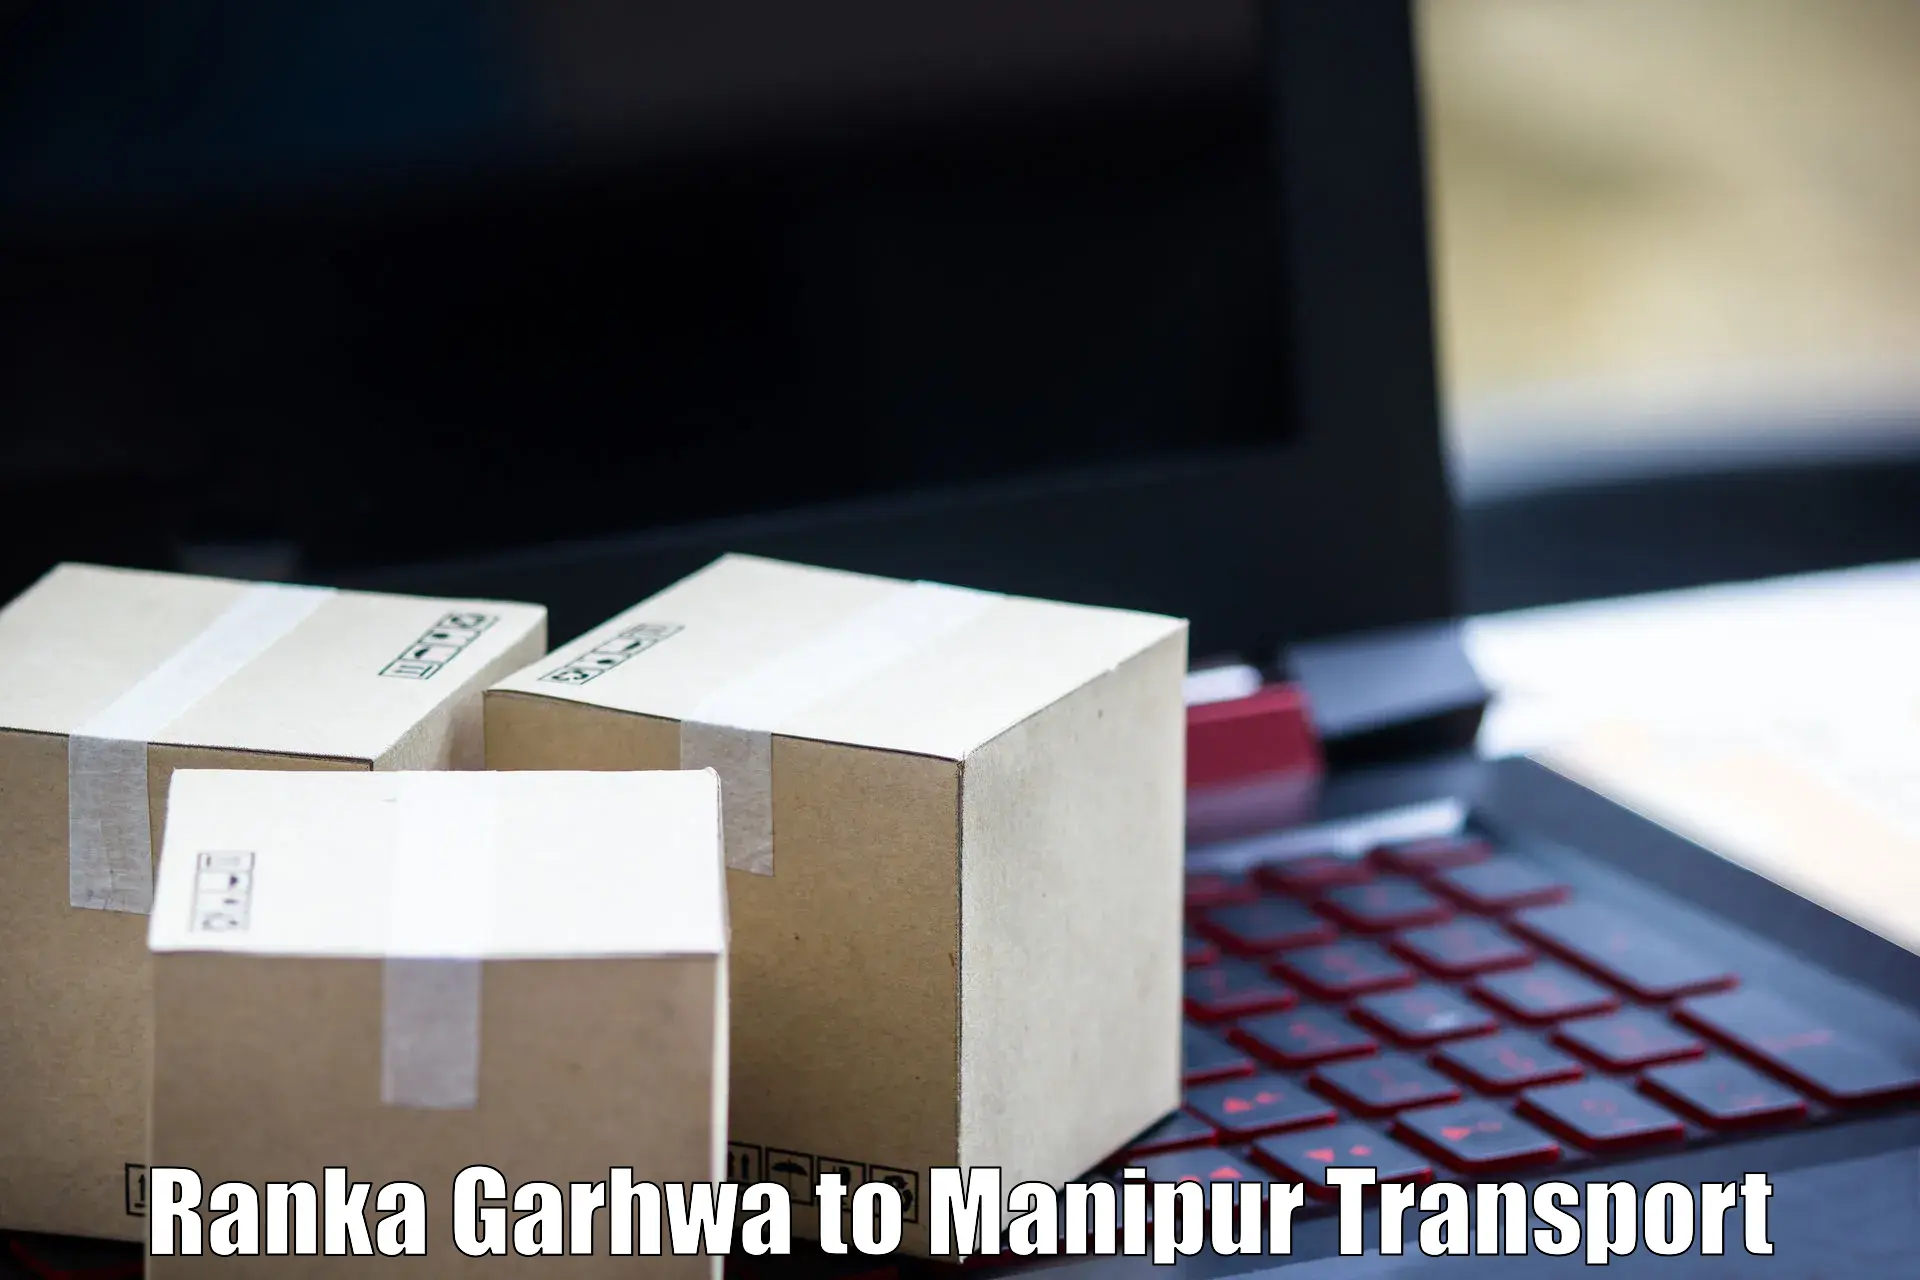 Express transport services Ranka Garhwa to NIT Manipur